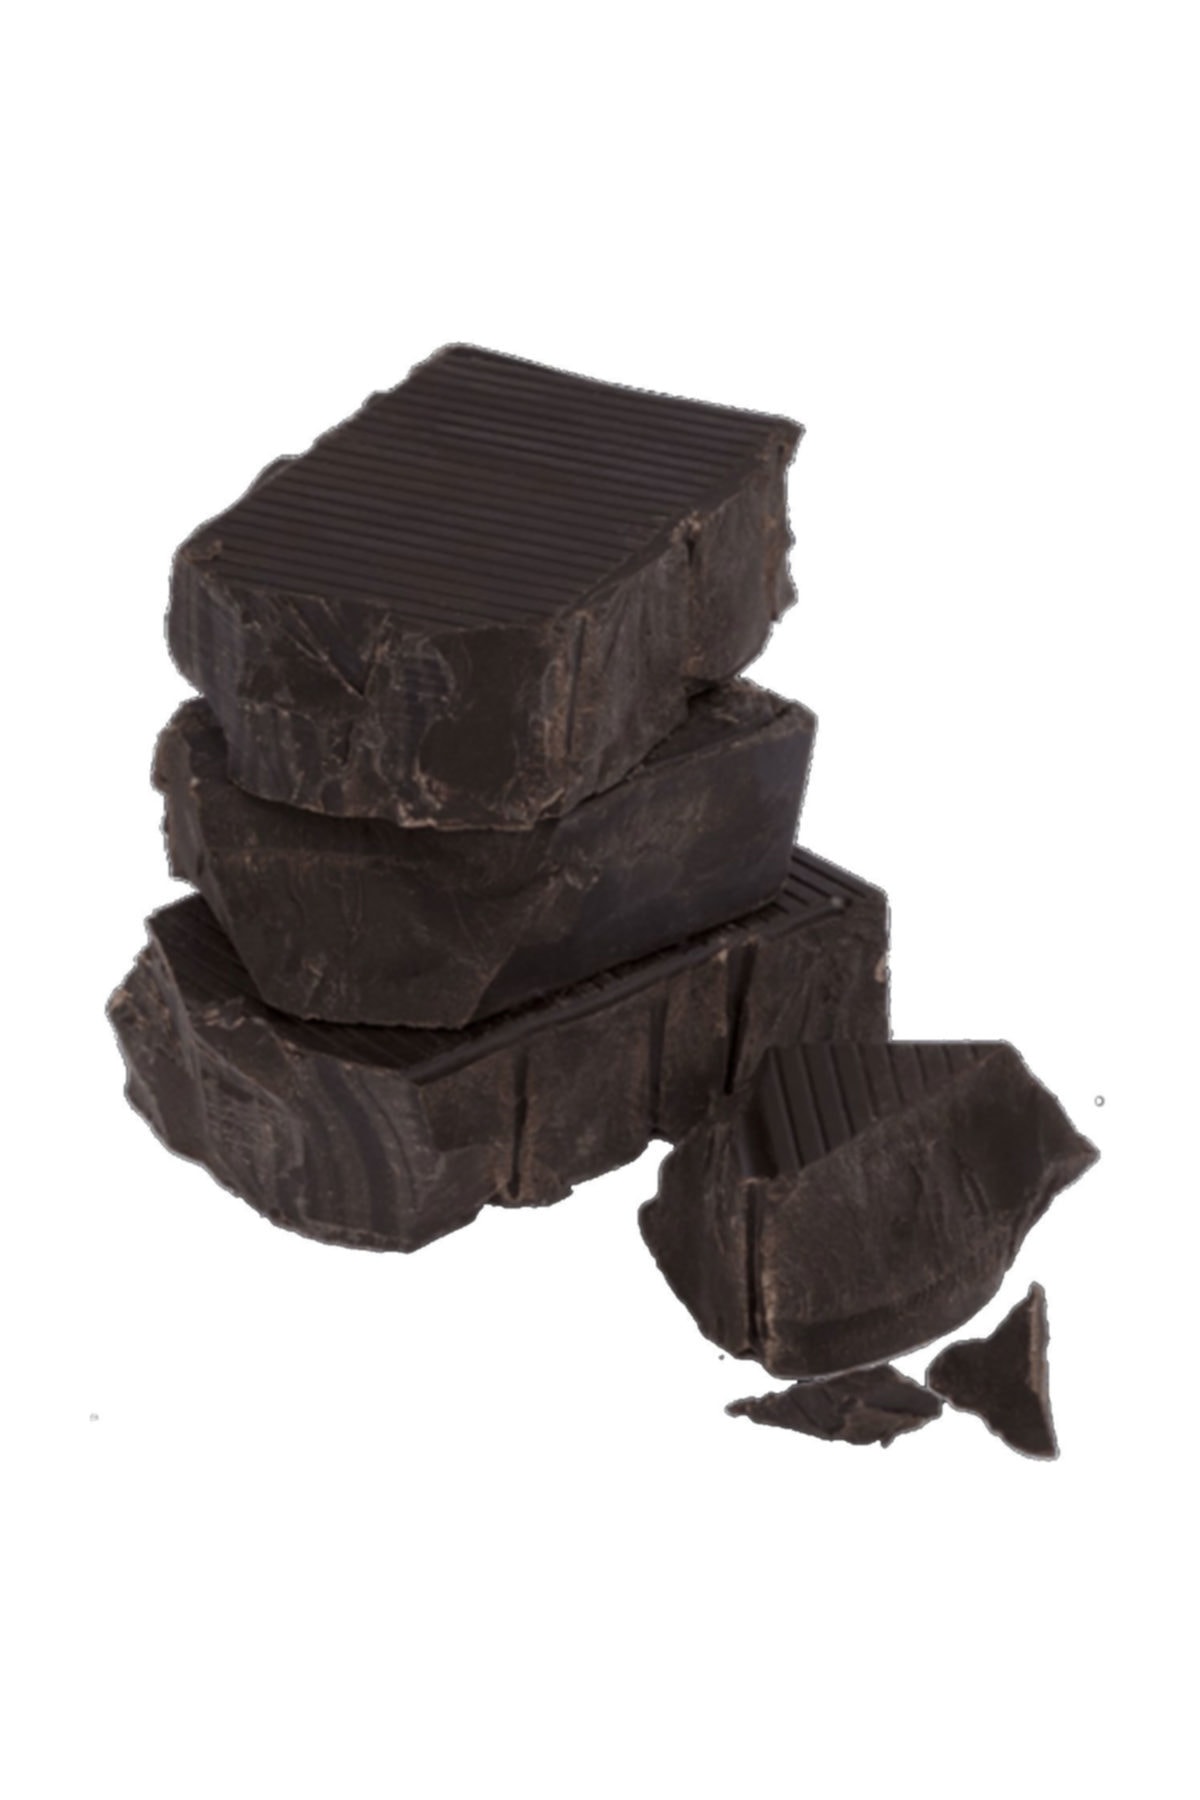 TT Tahtakale Toptancıları Bitter Kuvertür Çikolata Eritmelik Kalıp Çikolata 2.5 Kg